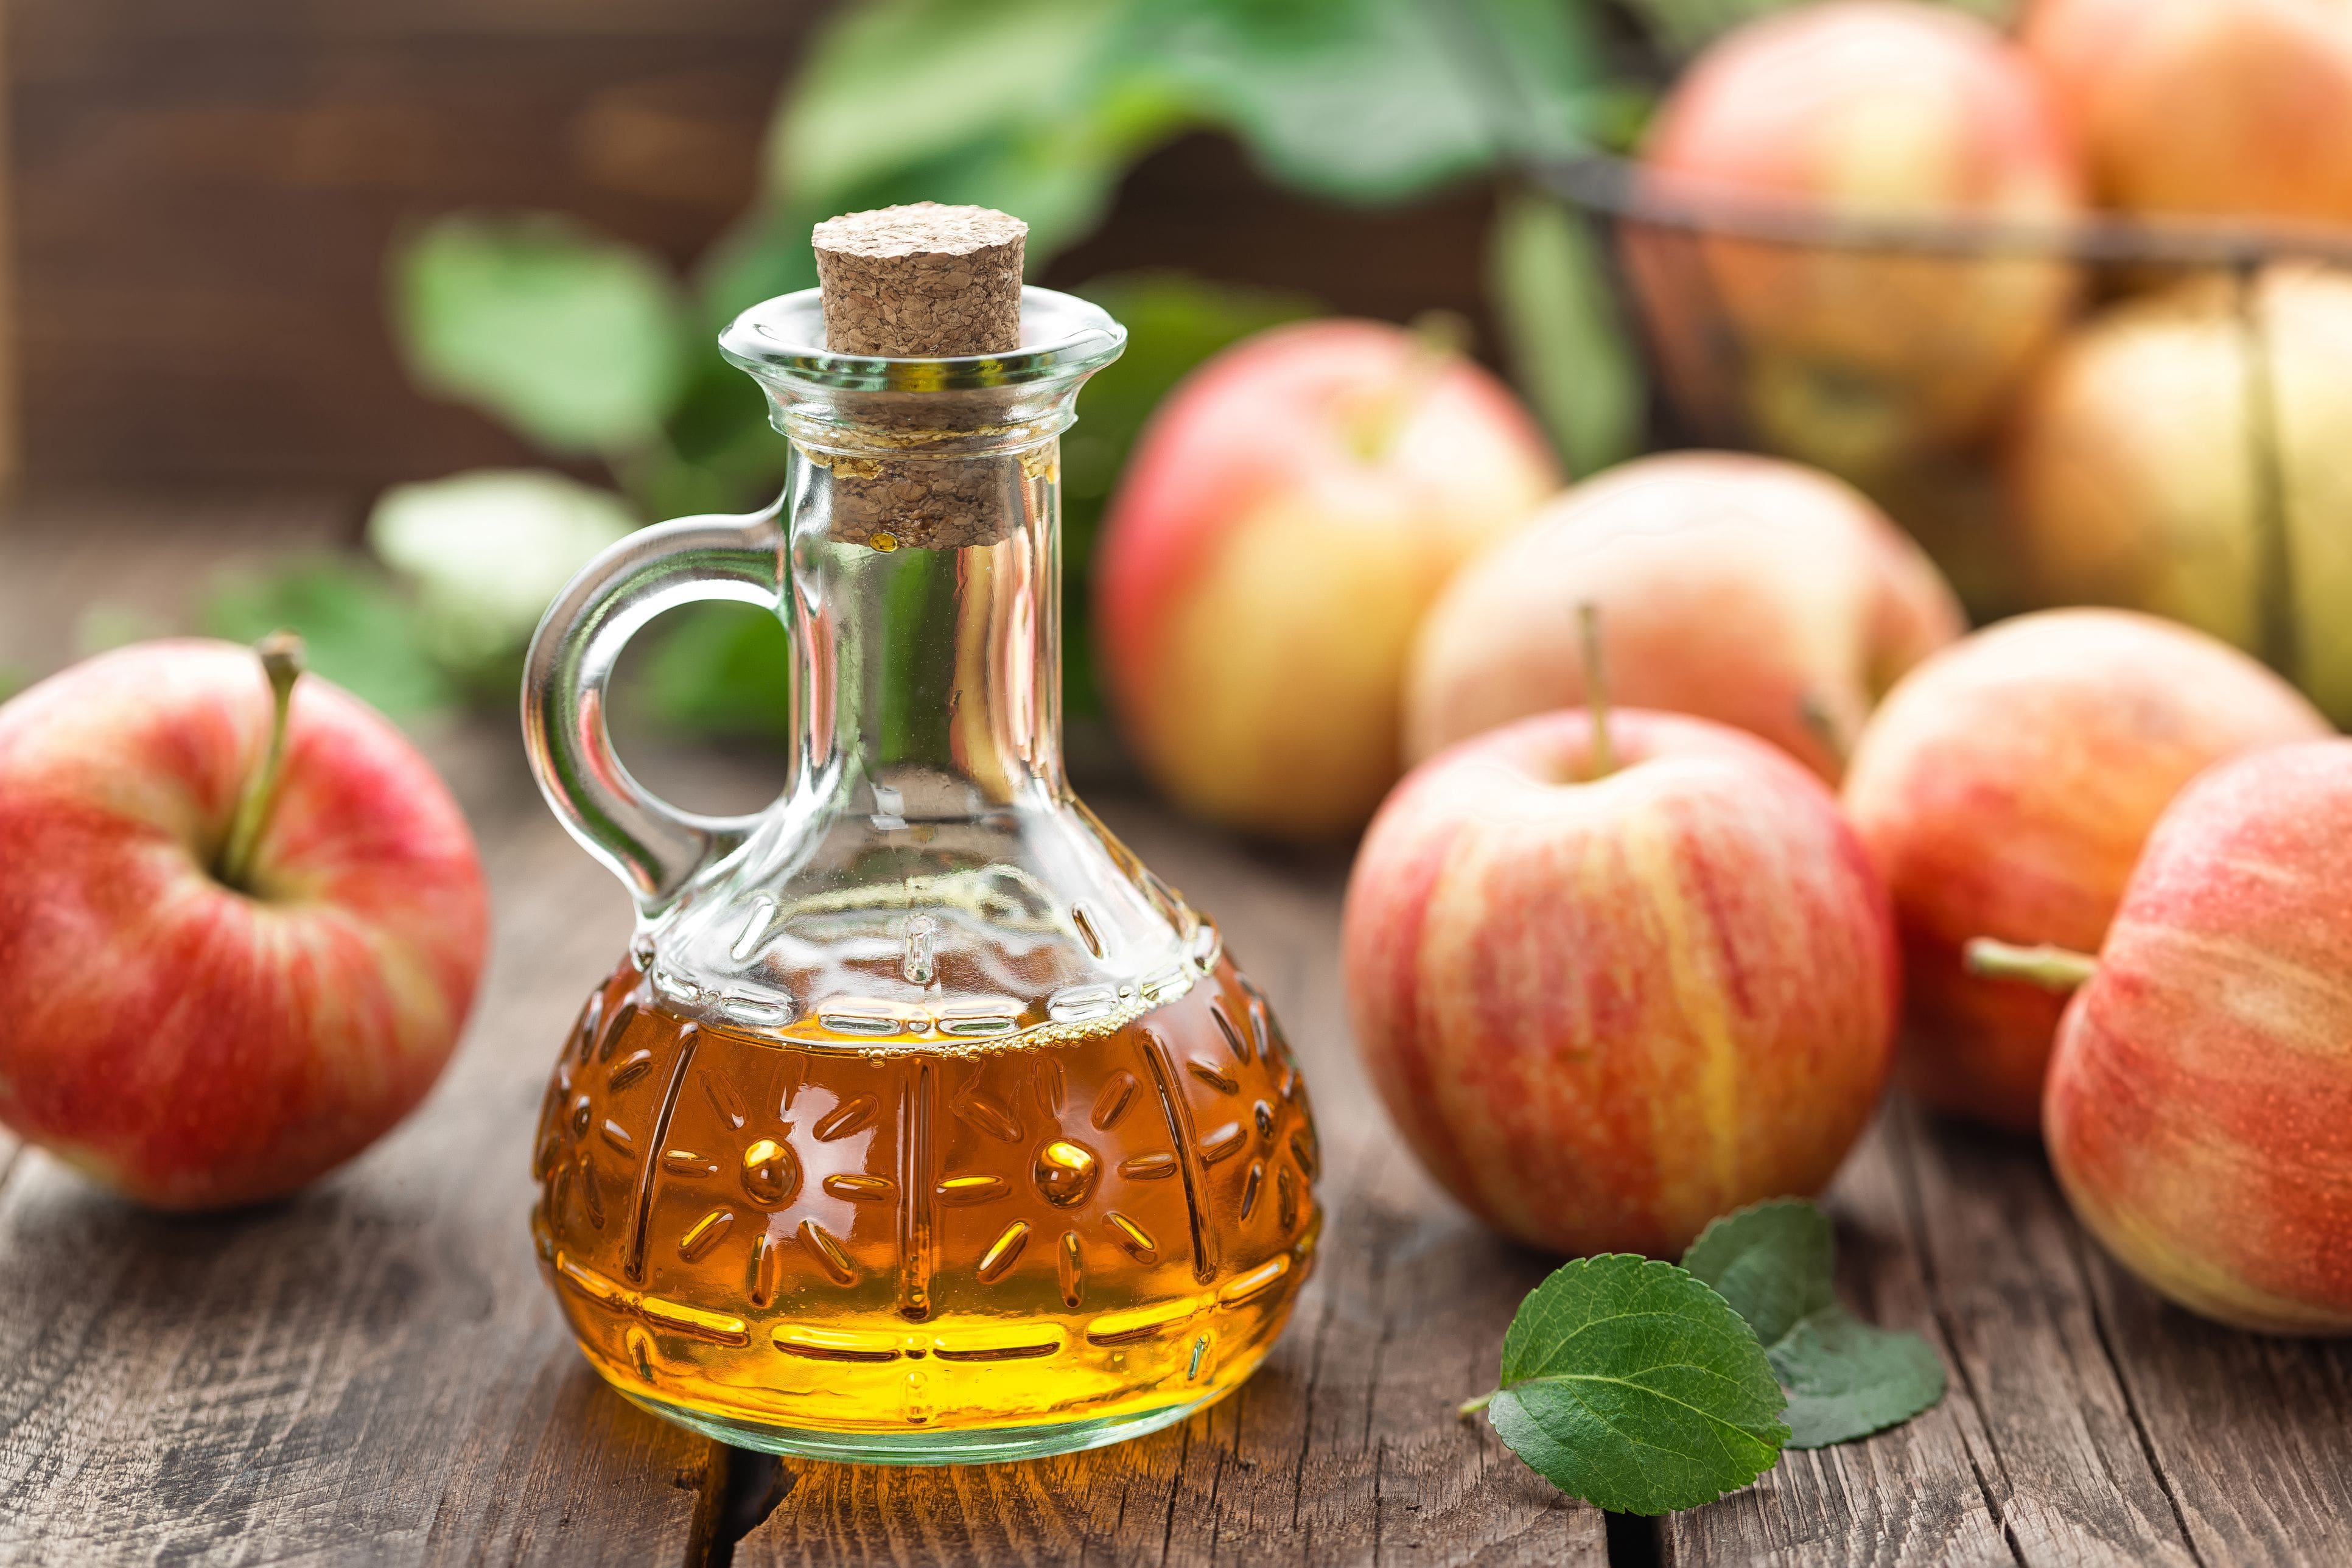 apple-cider-vinegar-royalty-free-image-614444404-1542818076